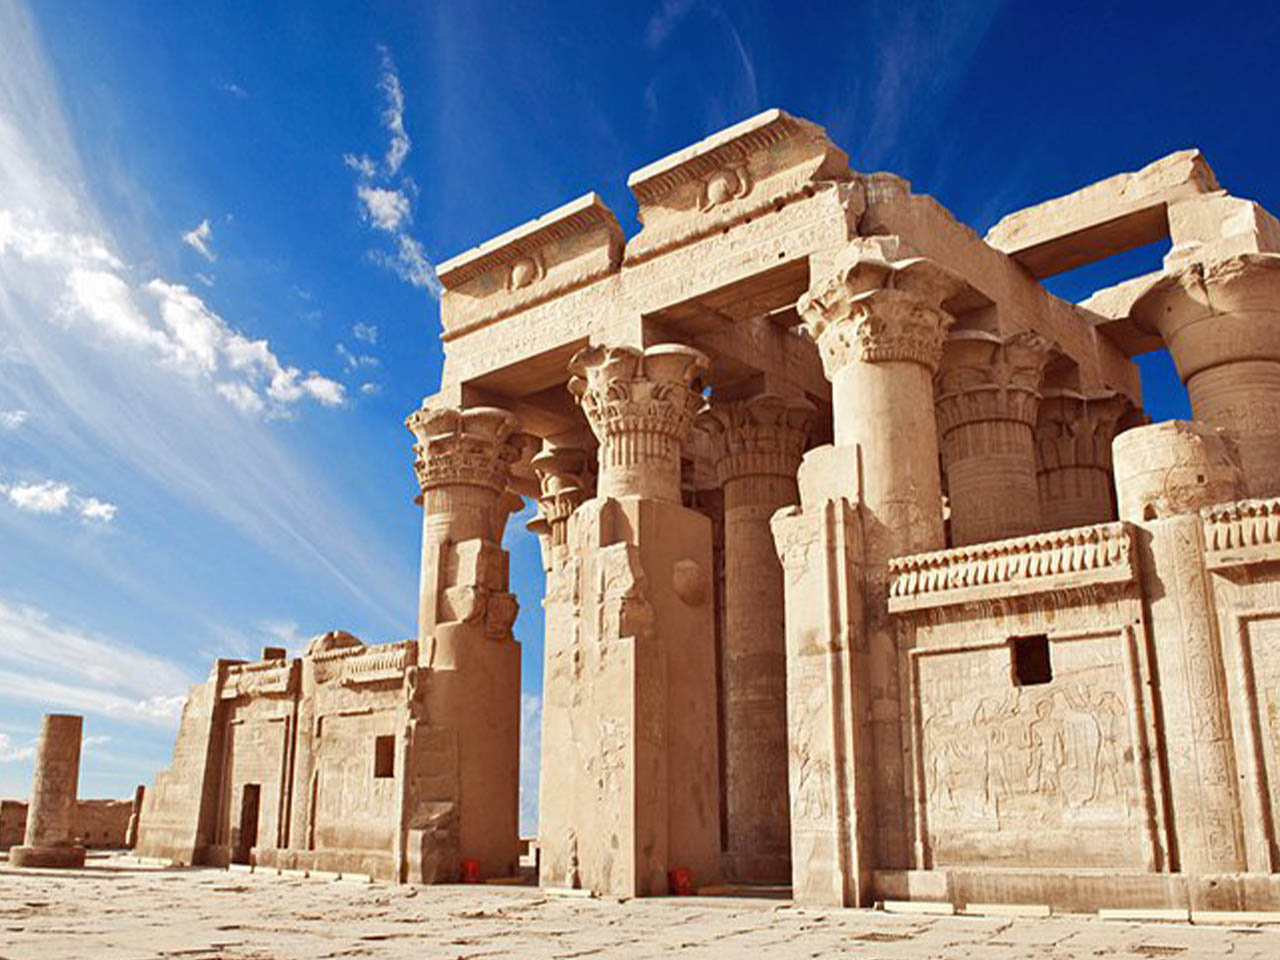 Caïro dagtocht naar de piramides van Memphis Sakkara en Dahshur